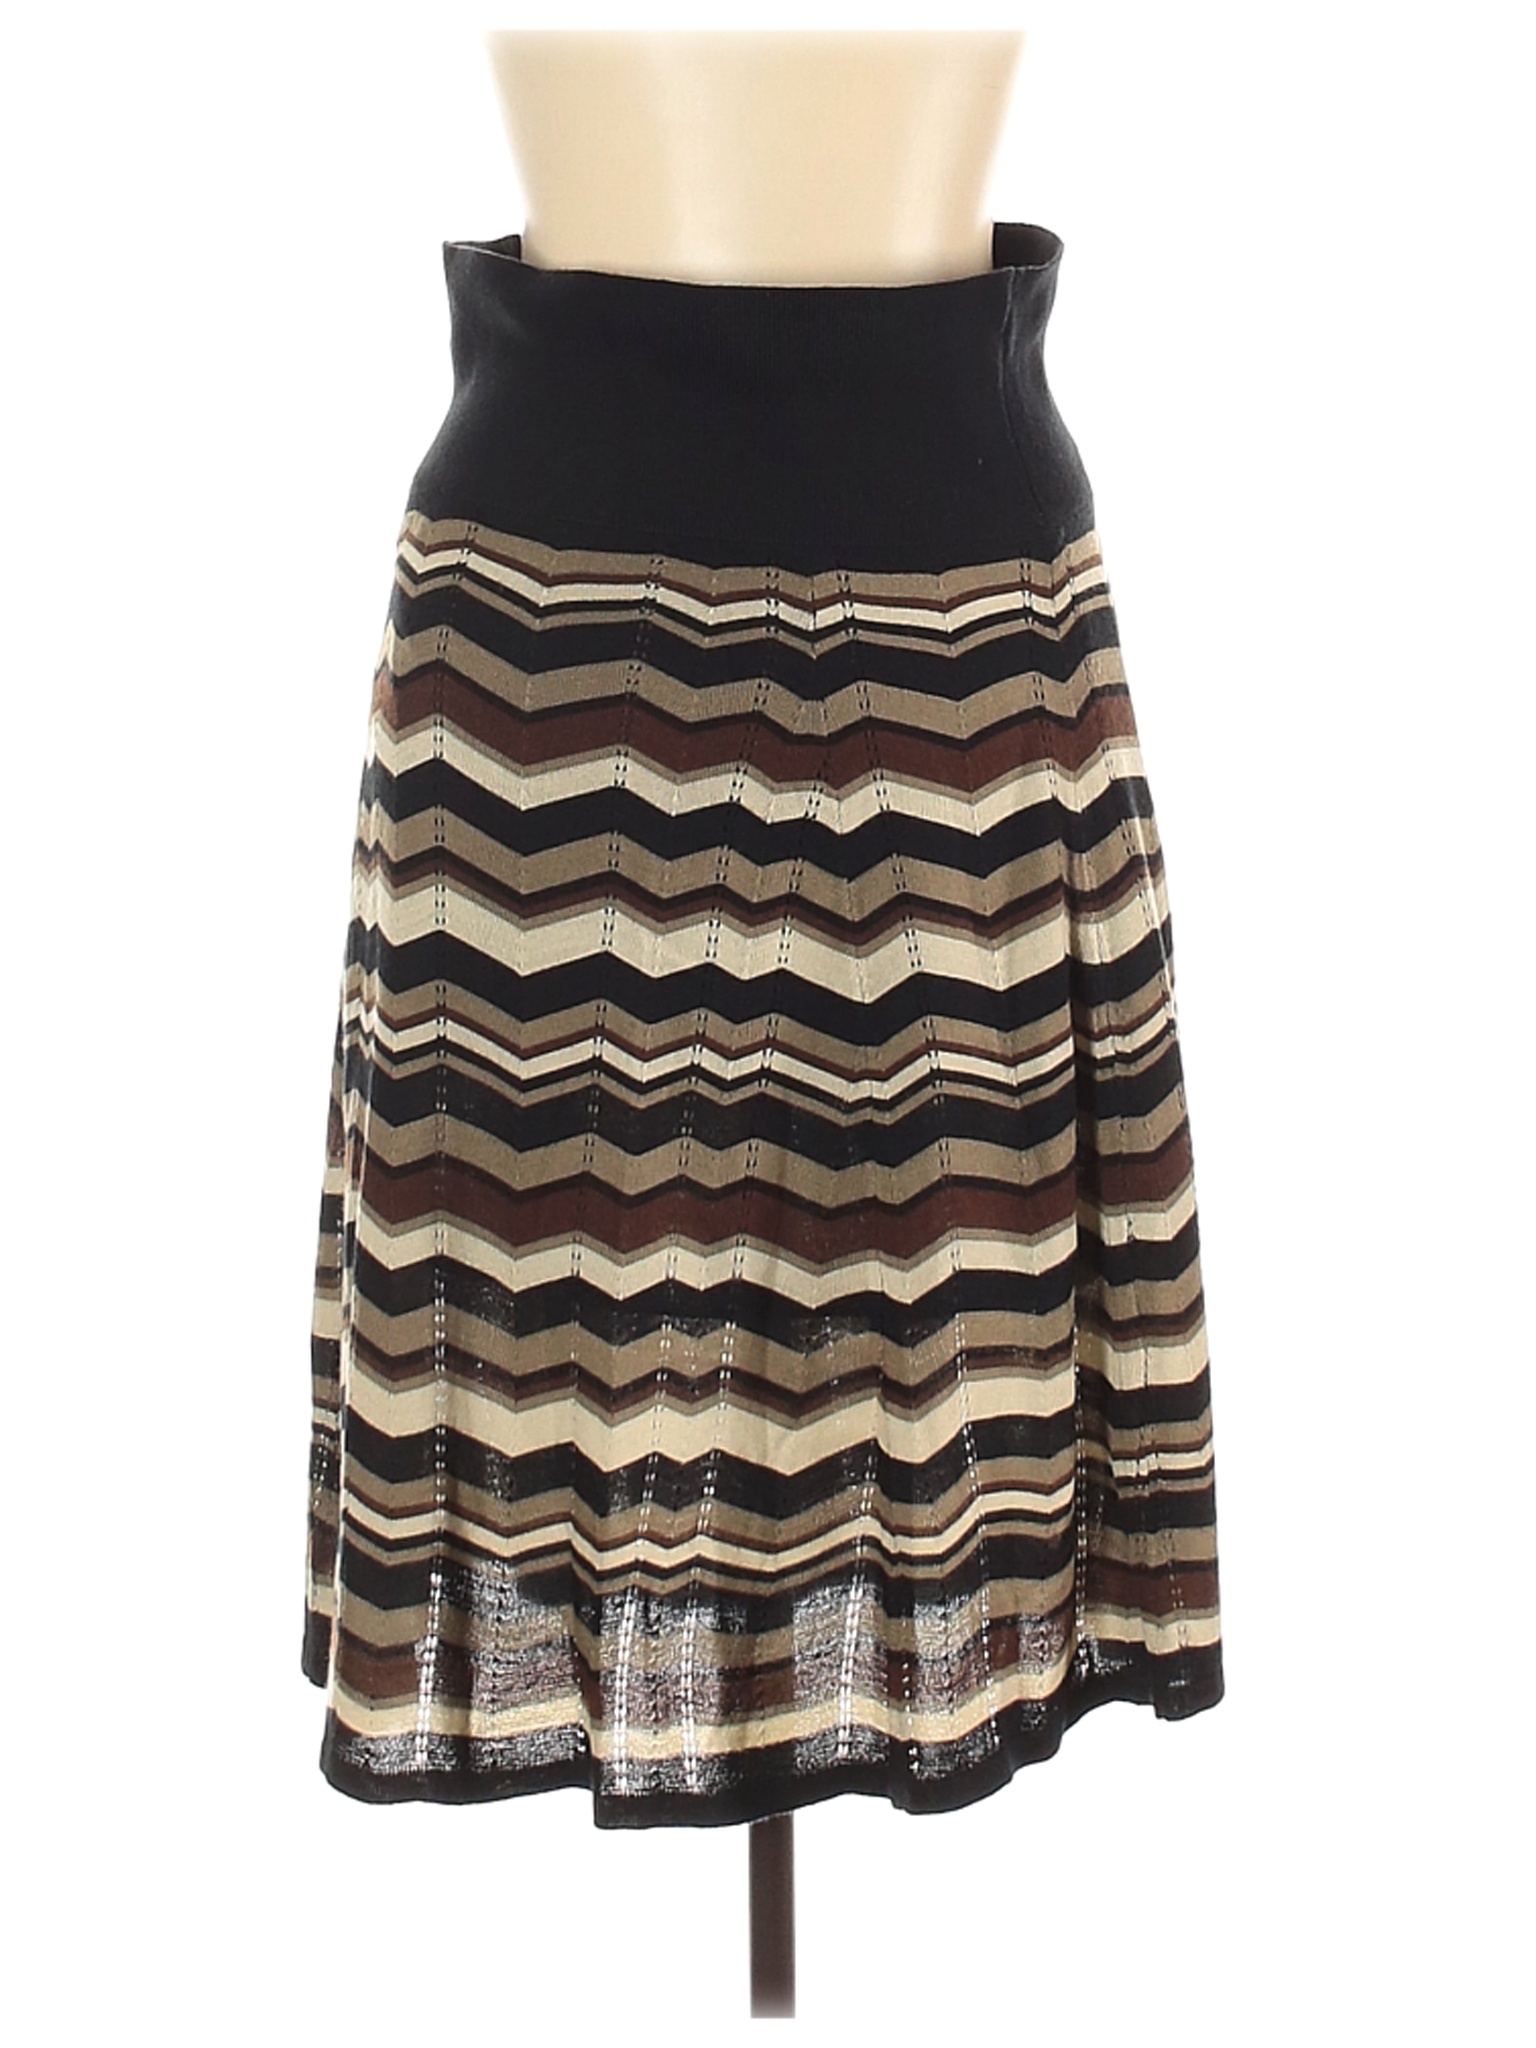 Lapis Women Black Casual Skirt L | eBay